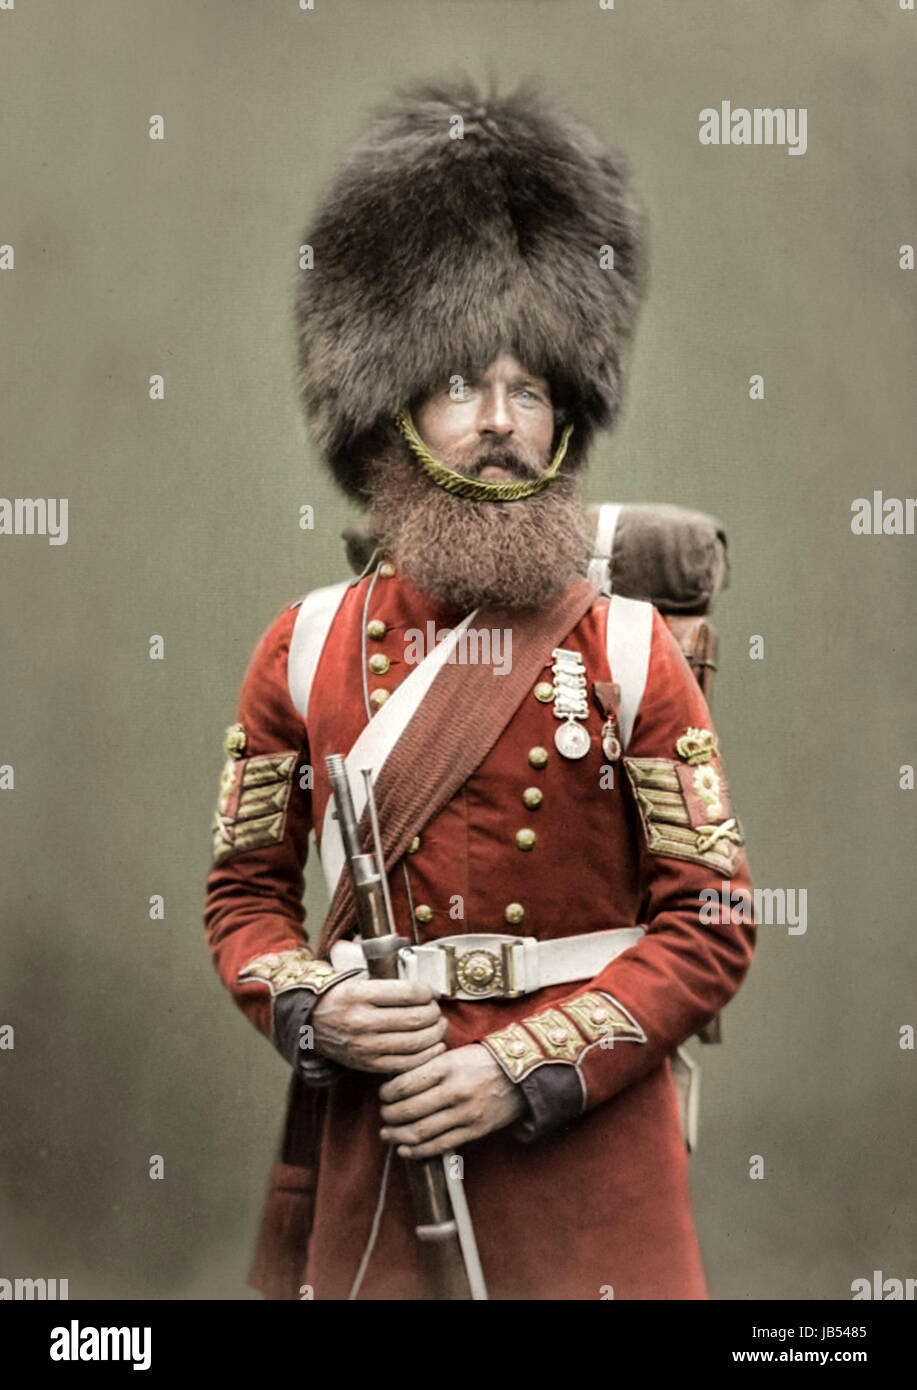 Farbe Sergeant William McGregor der Scots Fusiliers wachen auf seine Rückkehr aus dem Krim-Krieg im Juli 1856 von Robert Howlett und Joseph Cundall als Teil einer Serie mit dem Titel "Krim Helden 1856" und später Farbausführung fotografiert. Stockfoto